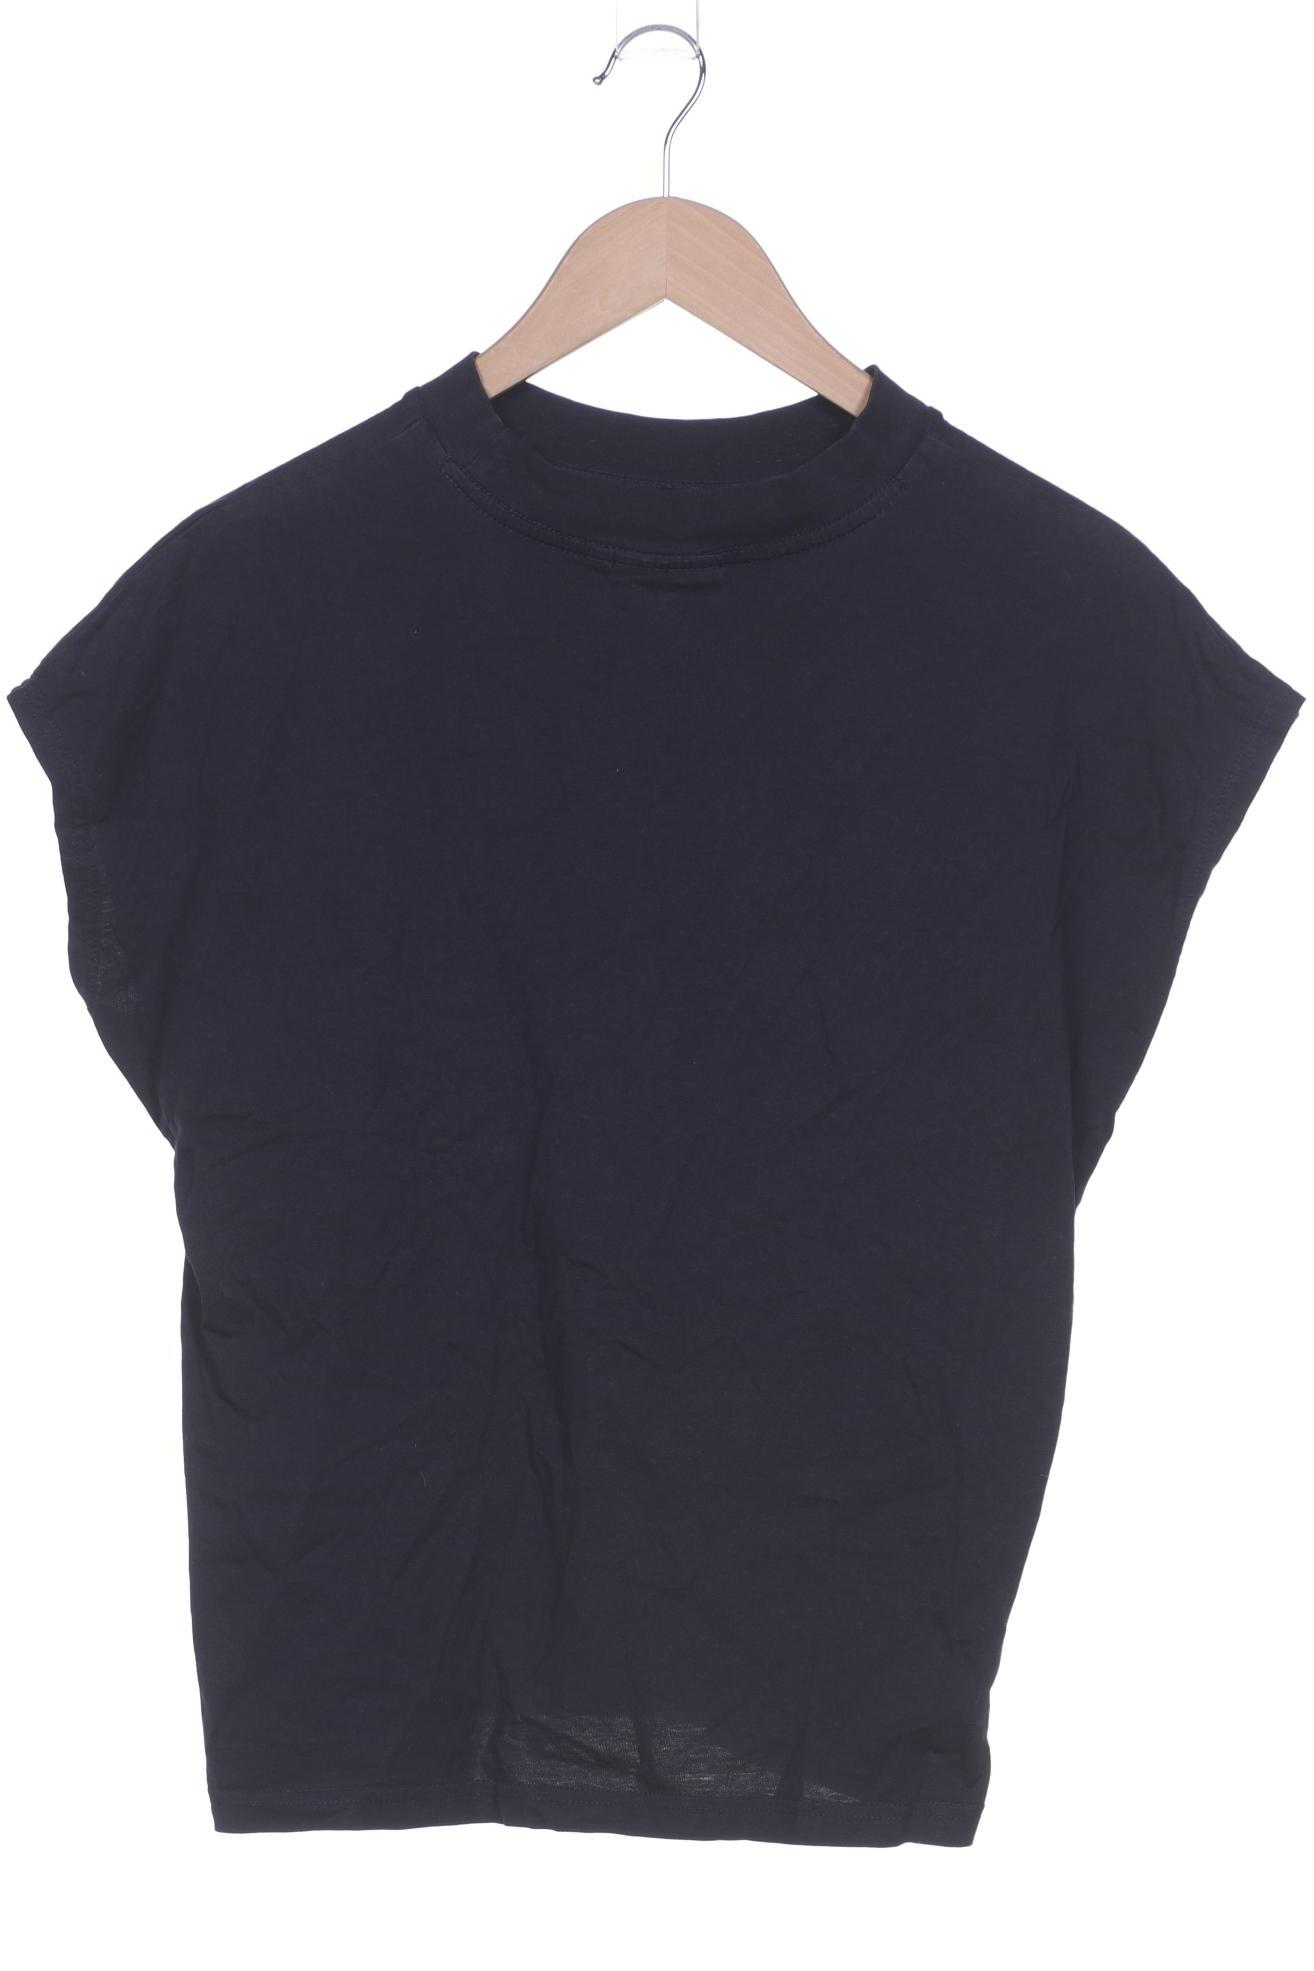 Weekday Damen T-Shirt, marineblau, Gr. 36 von Weekday